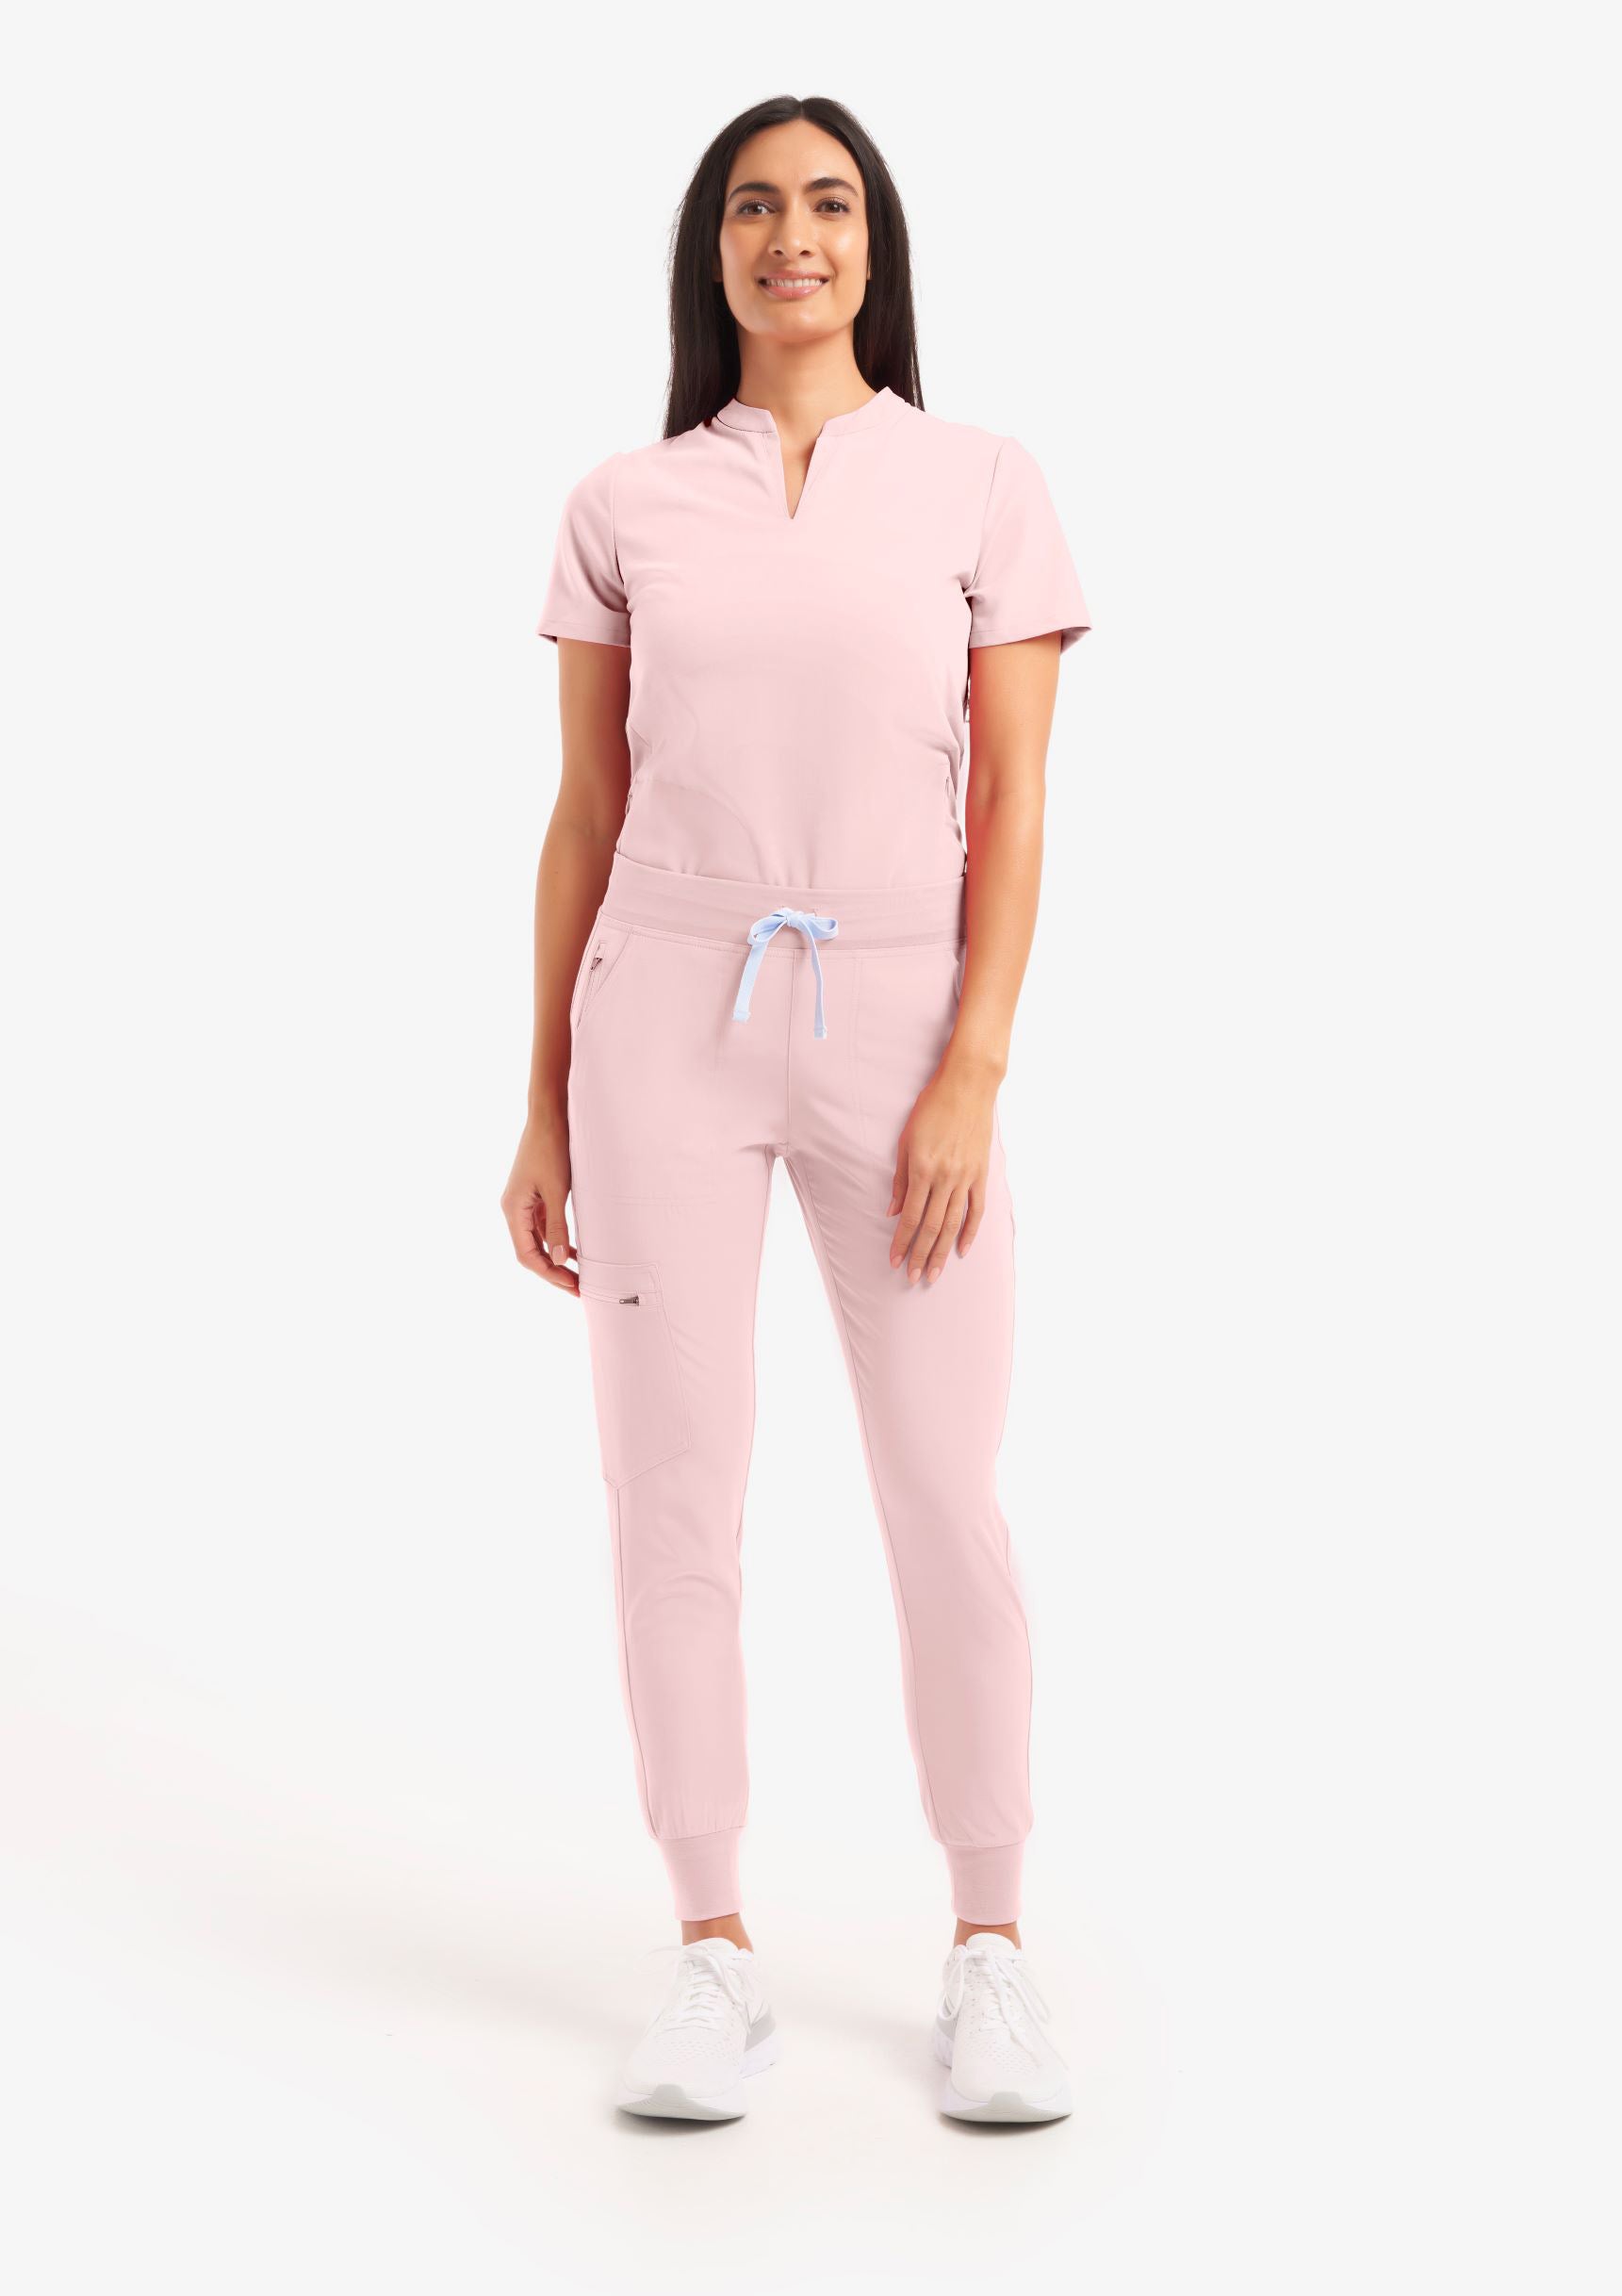 nursing cami in pink blush – sorellaorganics